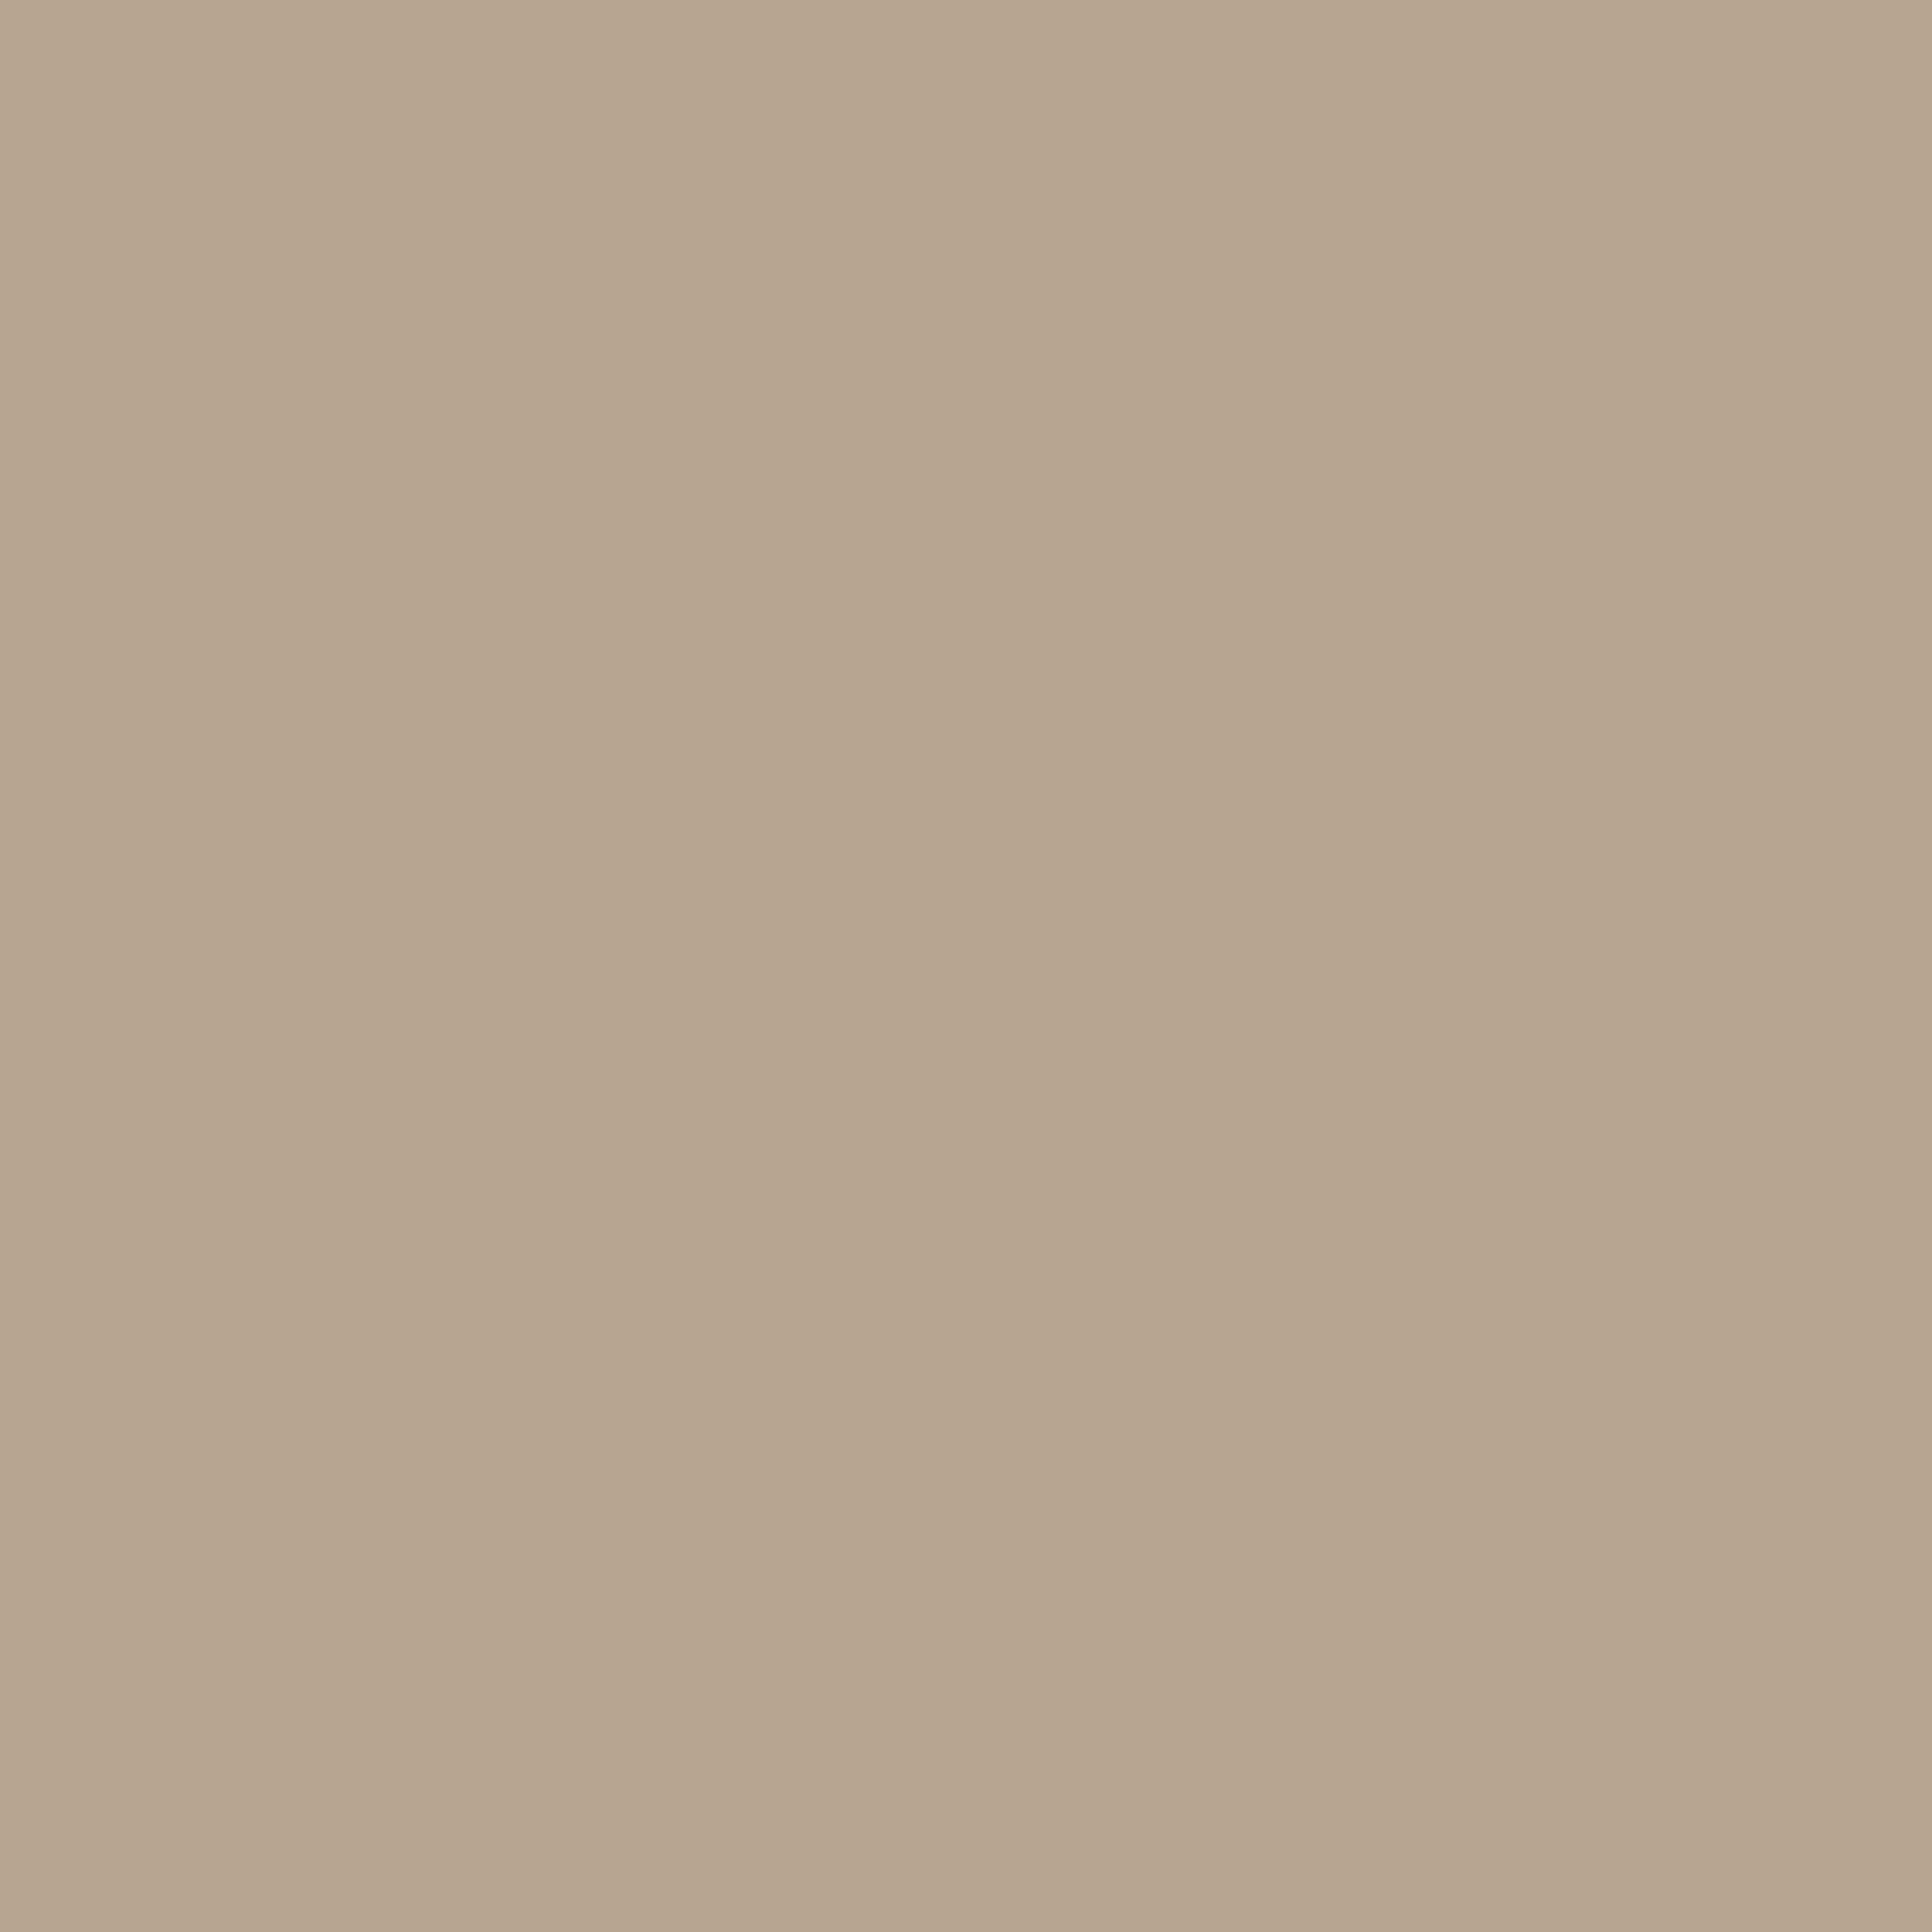 Portabello - Dark beige - Wallpaper Trader